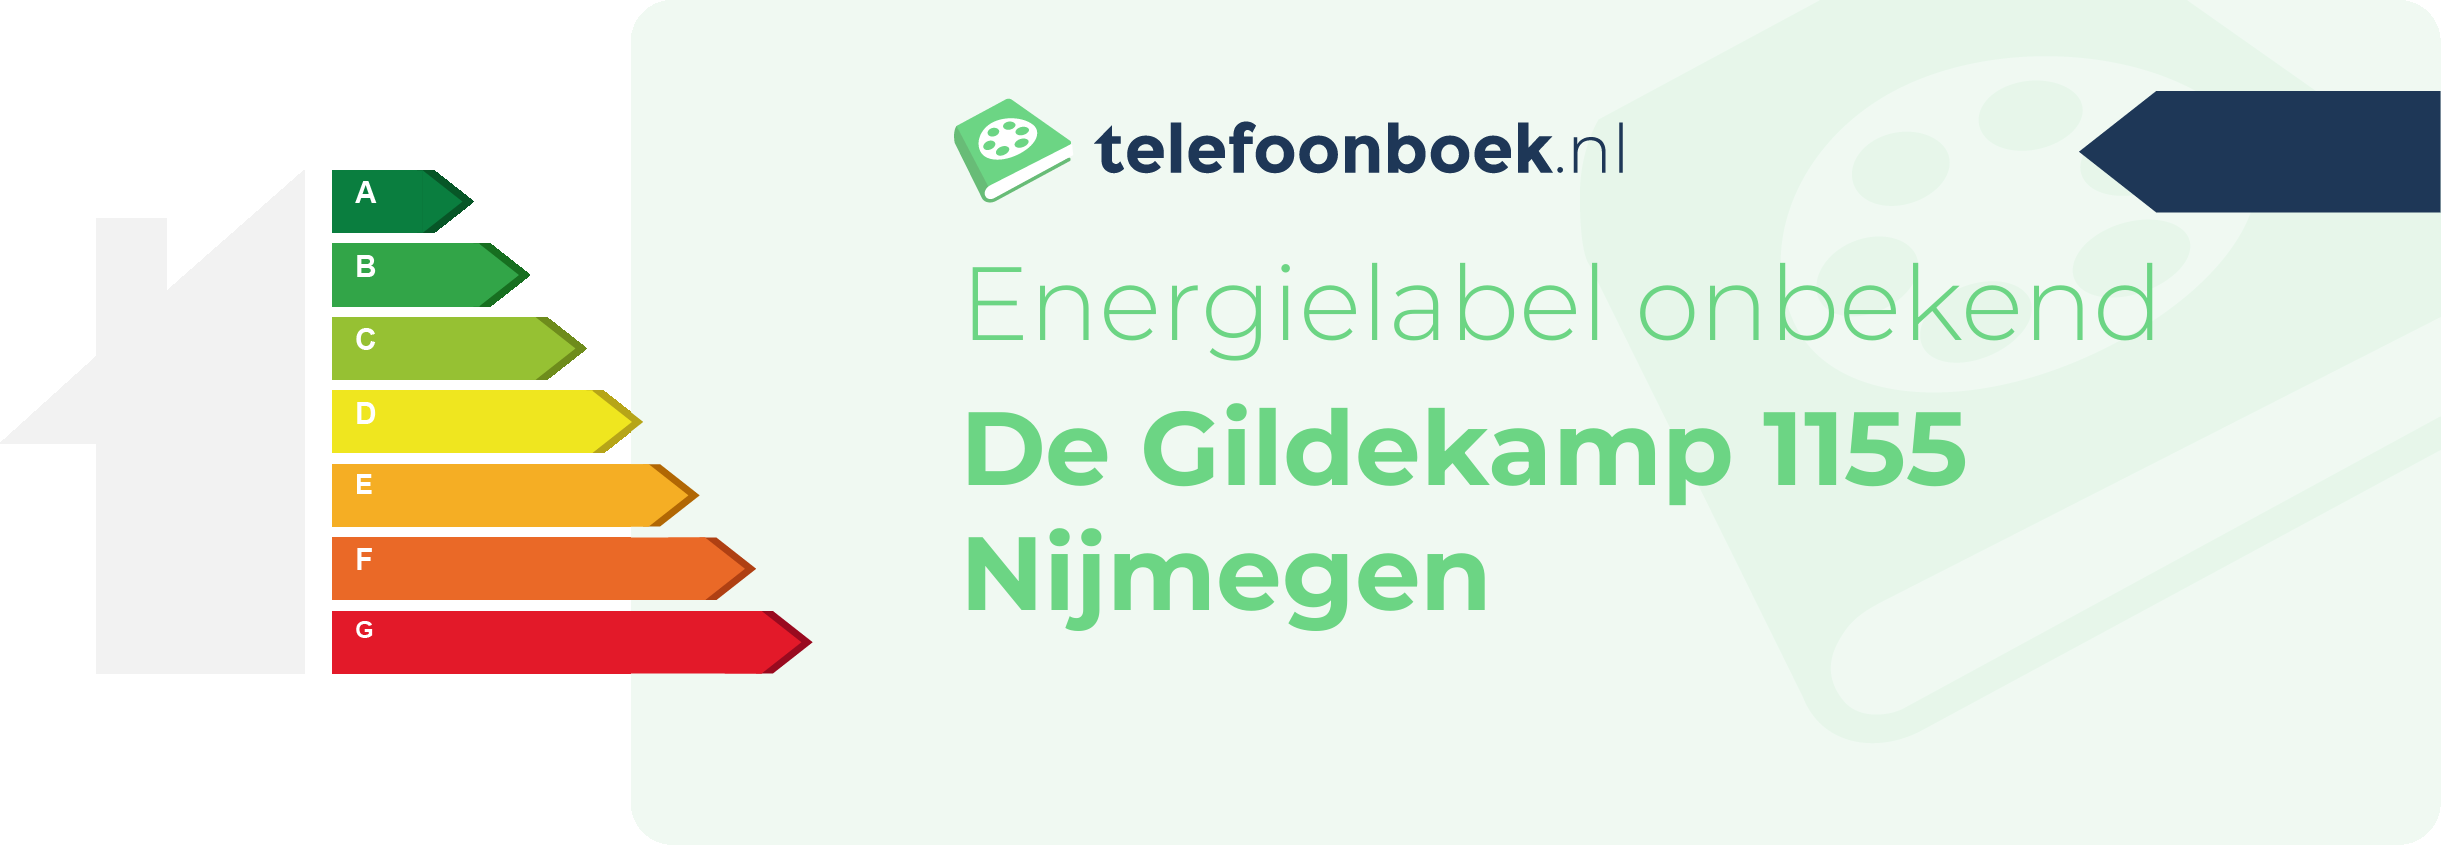 Energielabel De Gildekamp 1155 Nijmegen